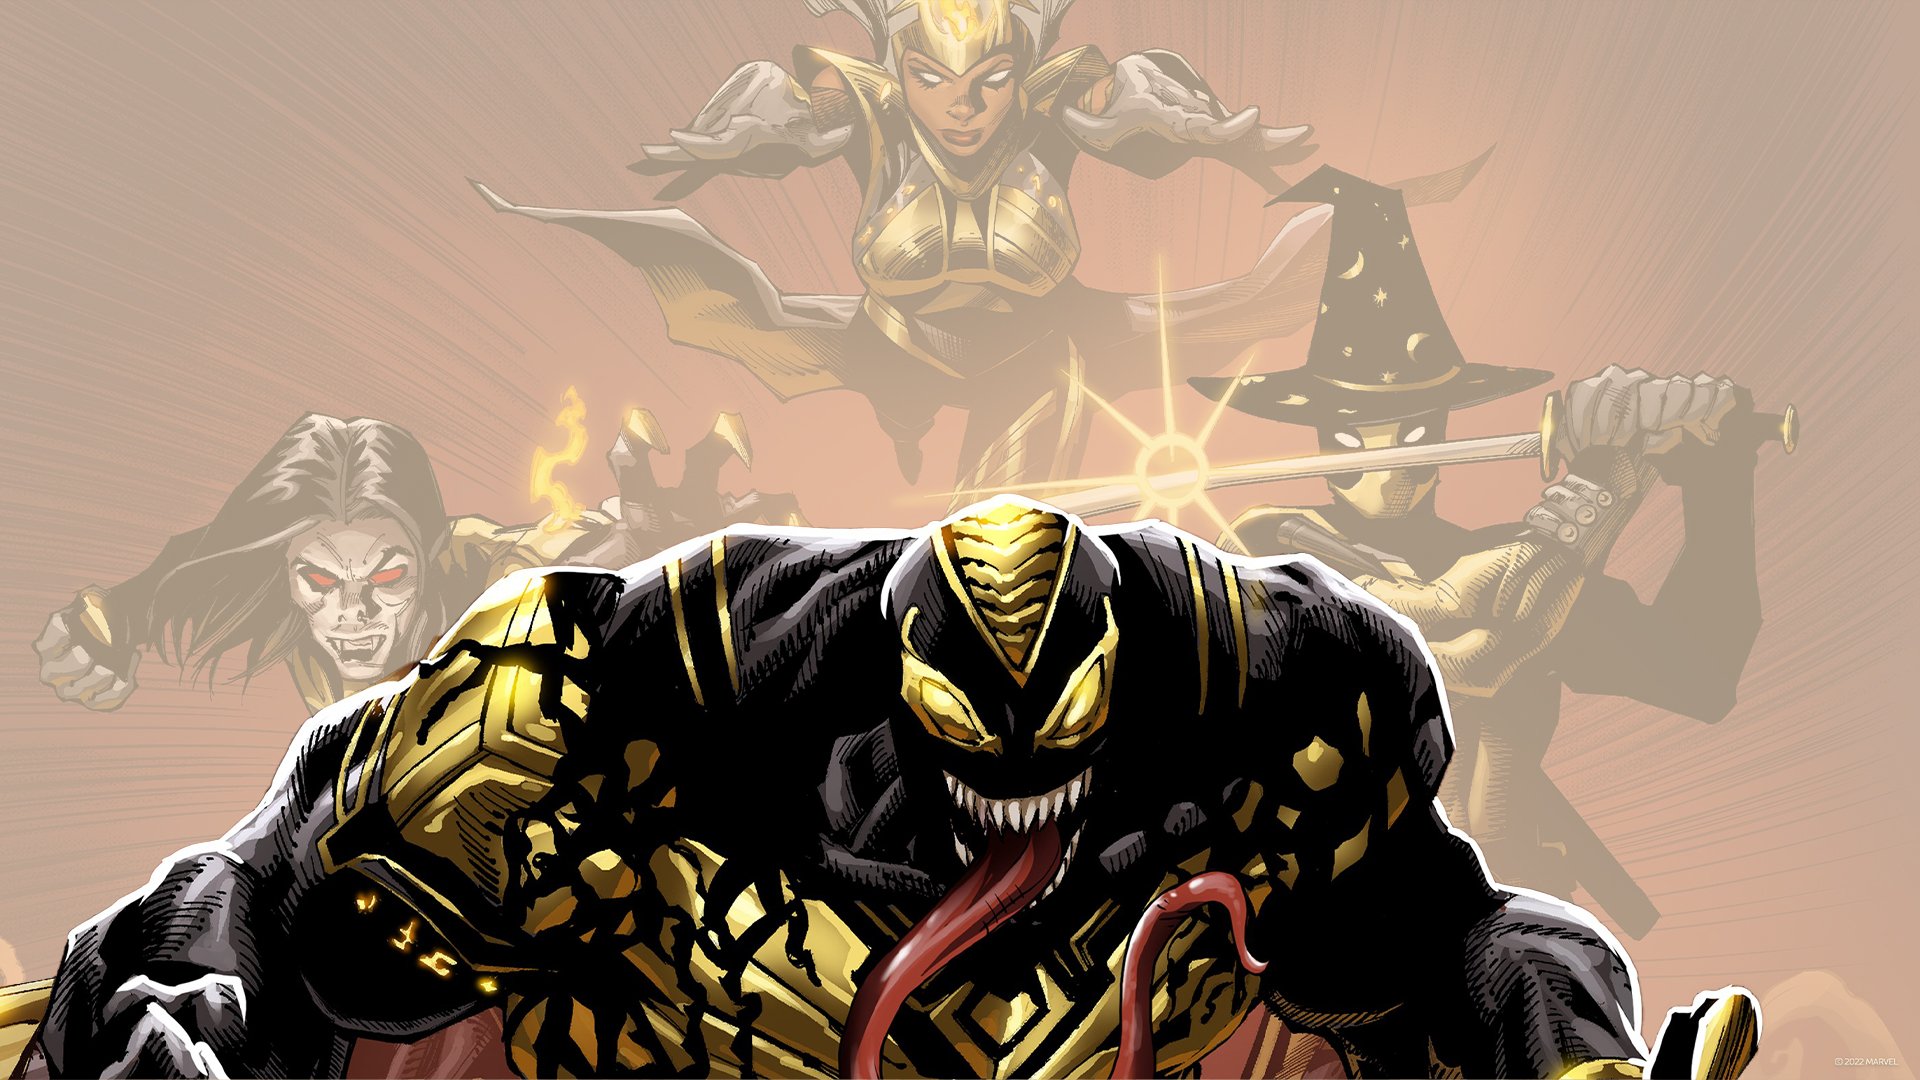 Marvel's Midnight Suns - Redemption Venom DLC Trailer